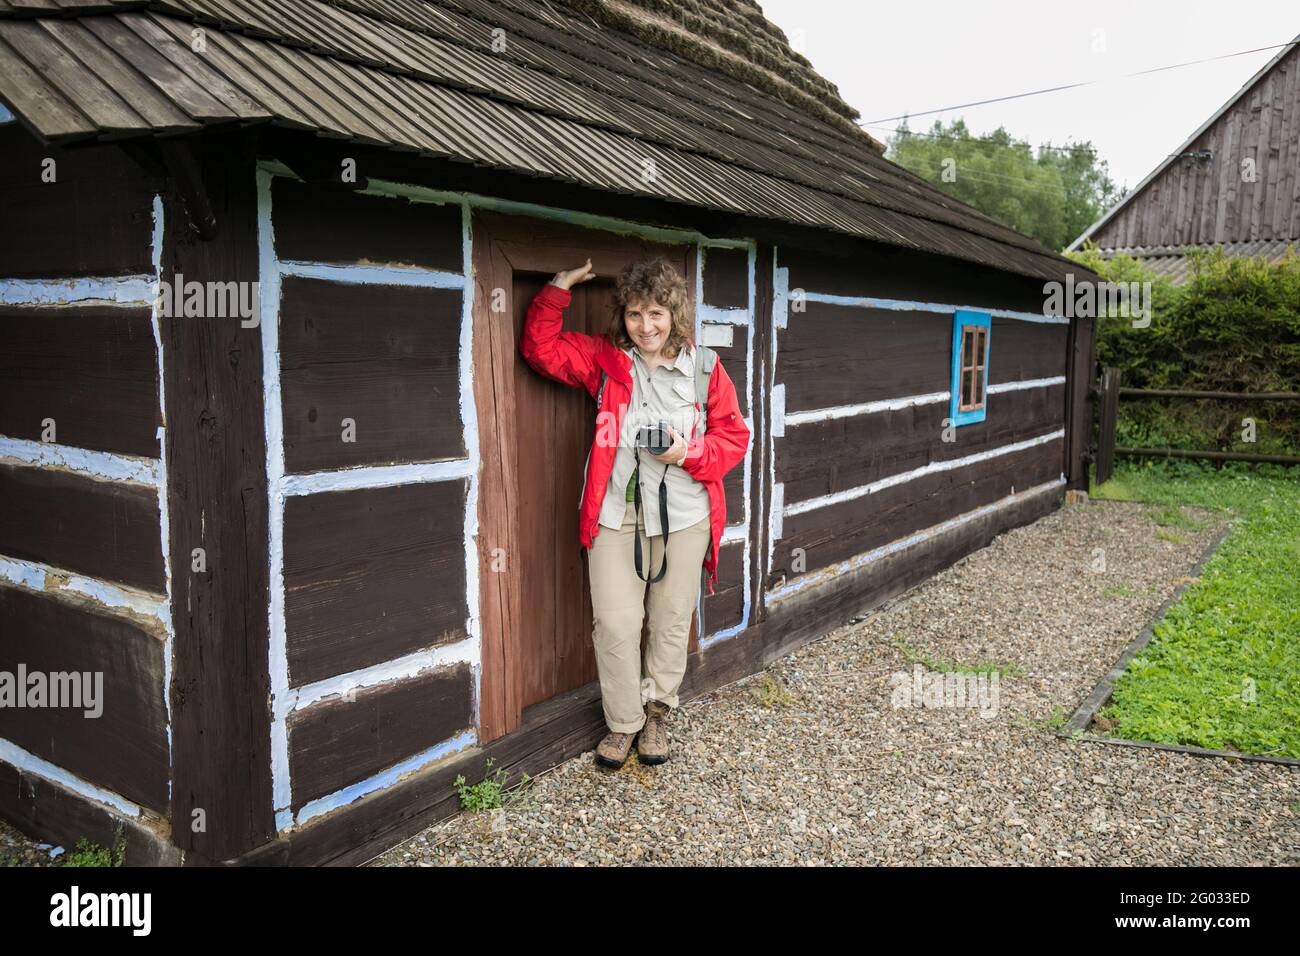 Zyndranowa, Polen - 13. August 2017: Ein Tourist vor einem typischen Lemko-Haus im Lemko-Kulturmuseum. osteuropa Stockfoto